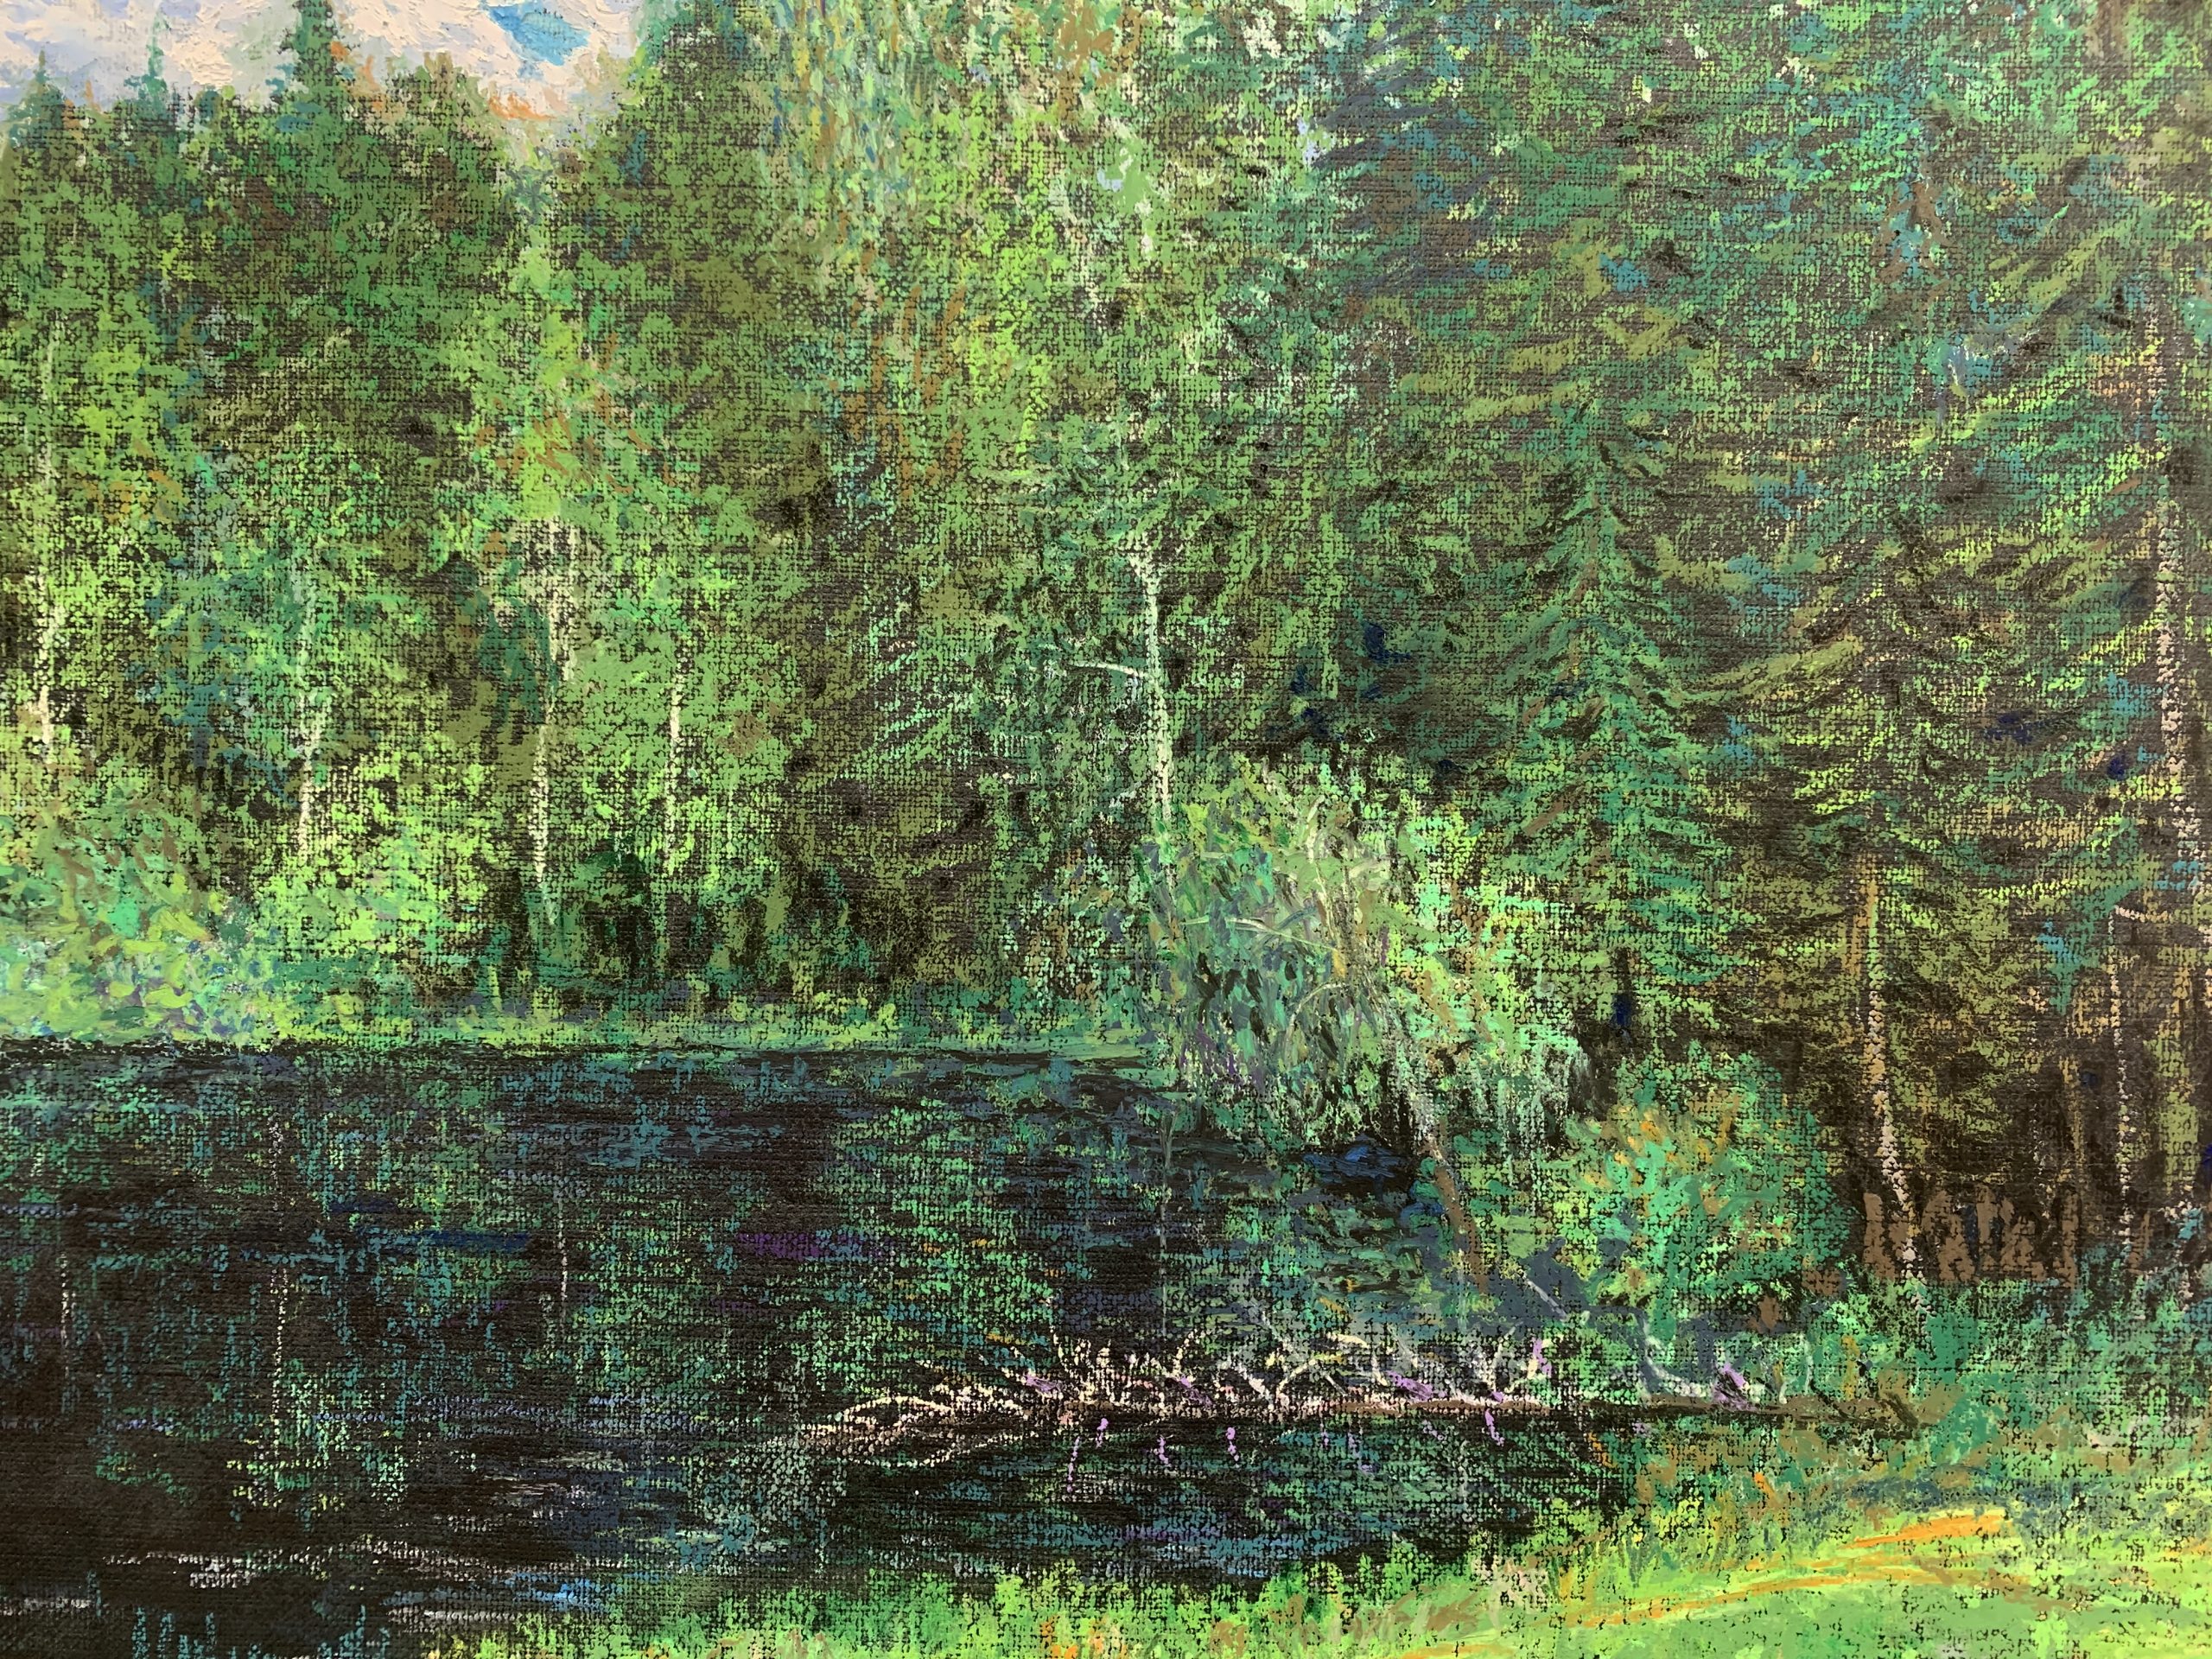 прудик у дороги масляная пастель картина пейзажи природа художник Альберт Сафиуллин